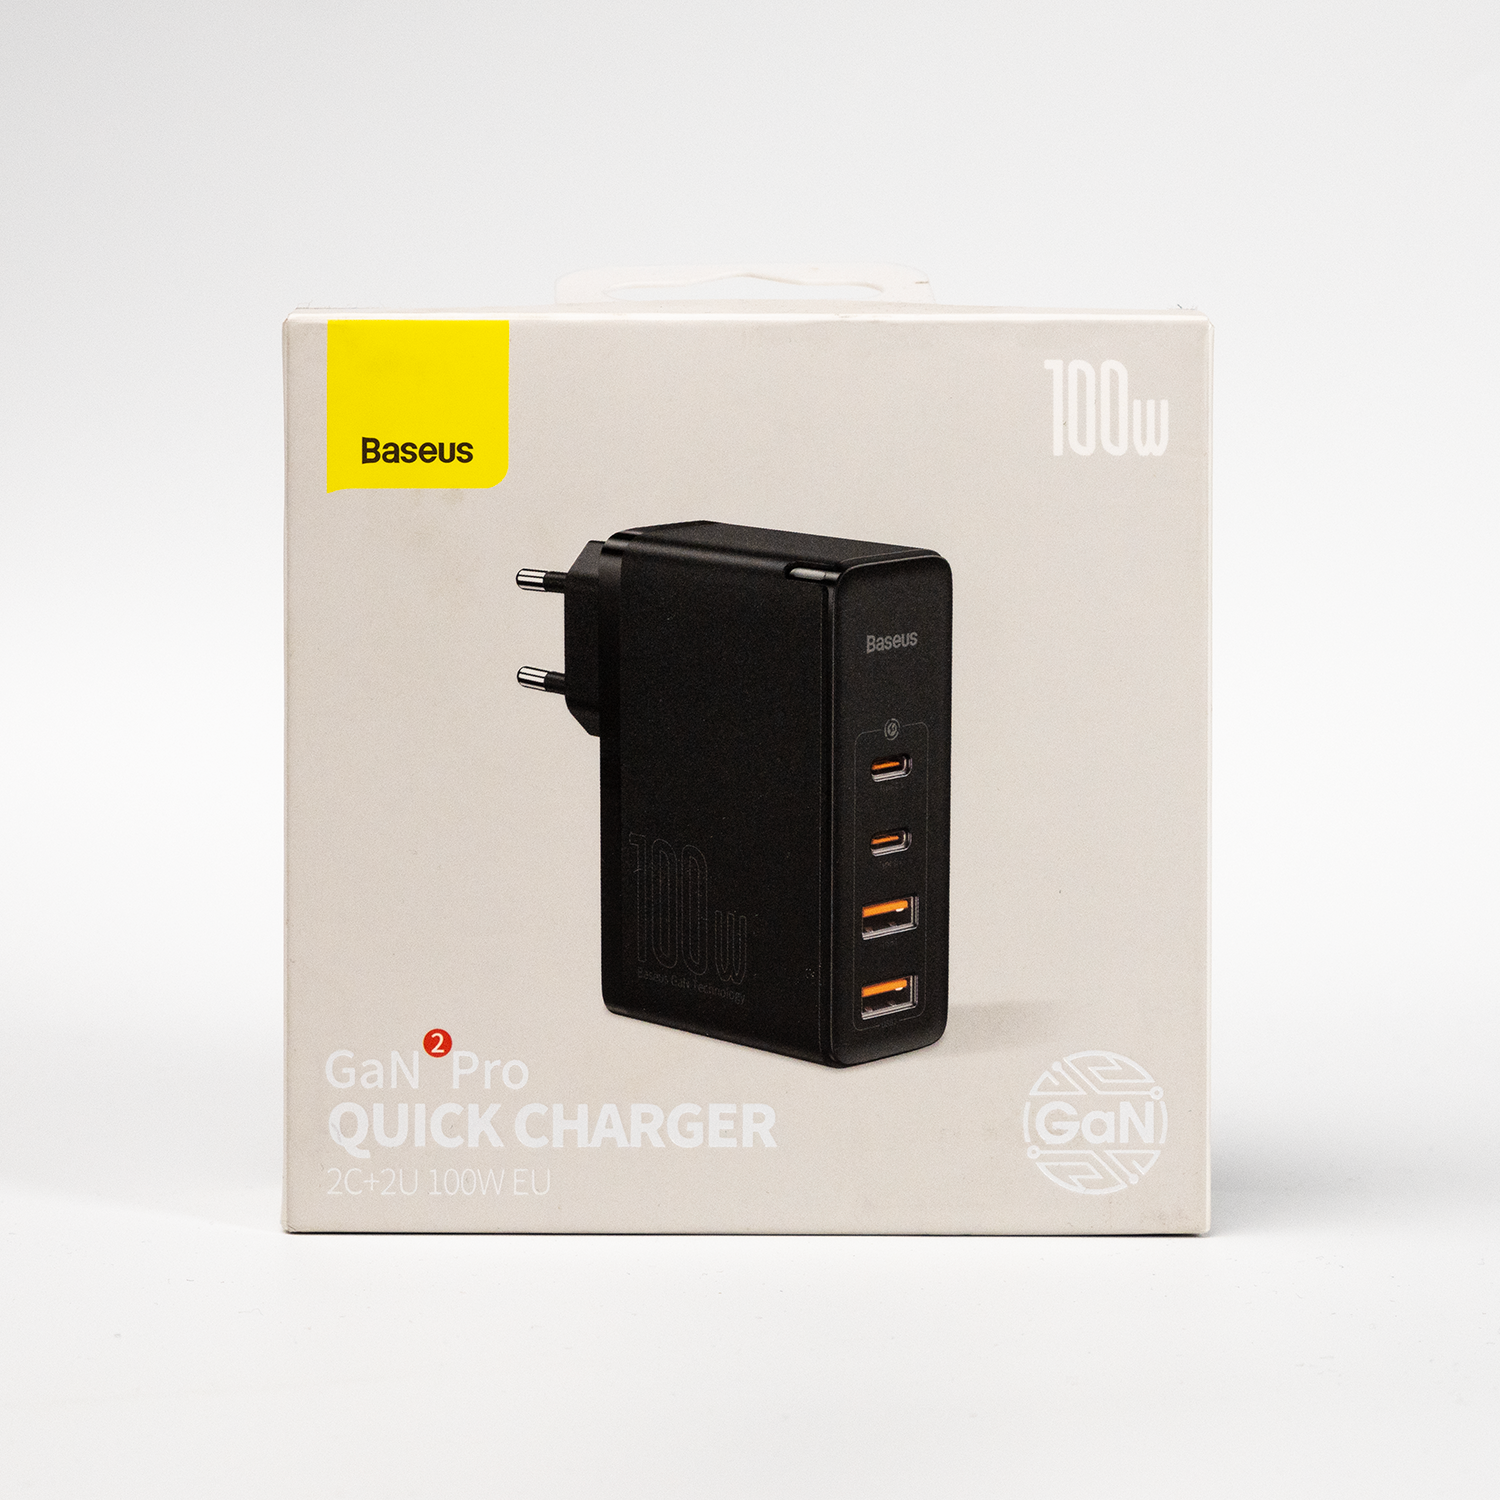 Сетевое зарядное устройство OS-Baseus GaN2 Pro Quick Charger 2U+2C 100W EU (CCGAN2P-L01) Черное